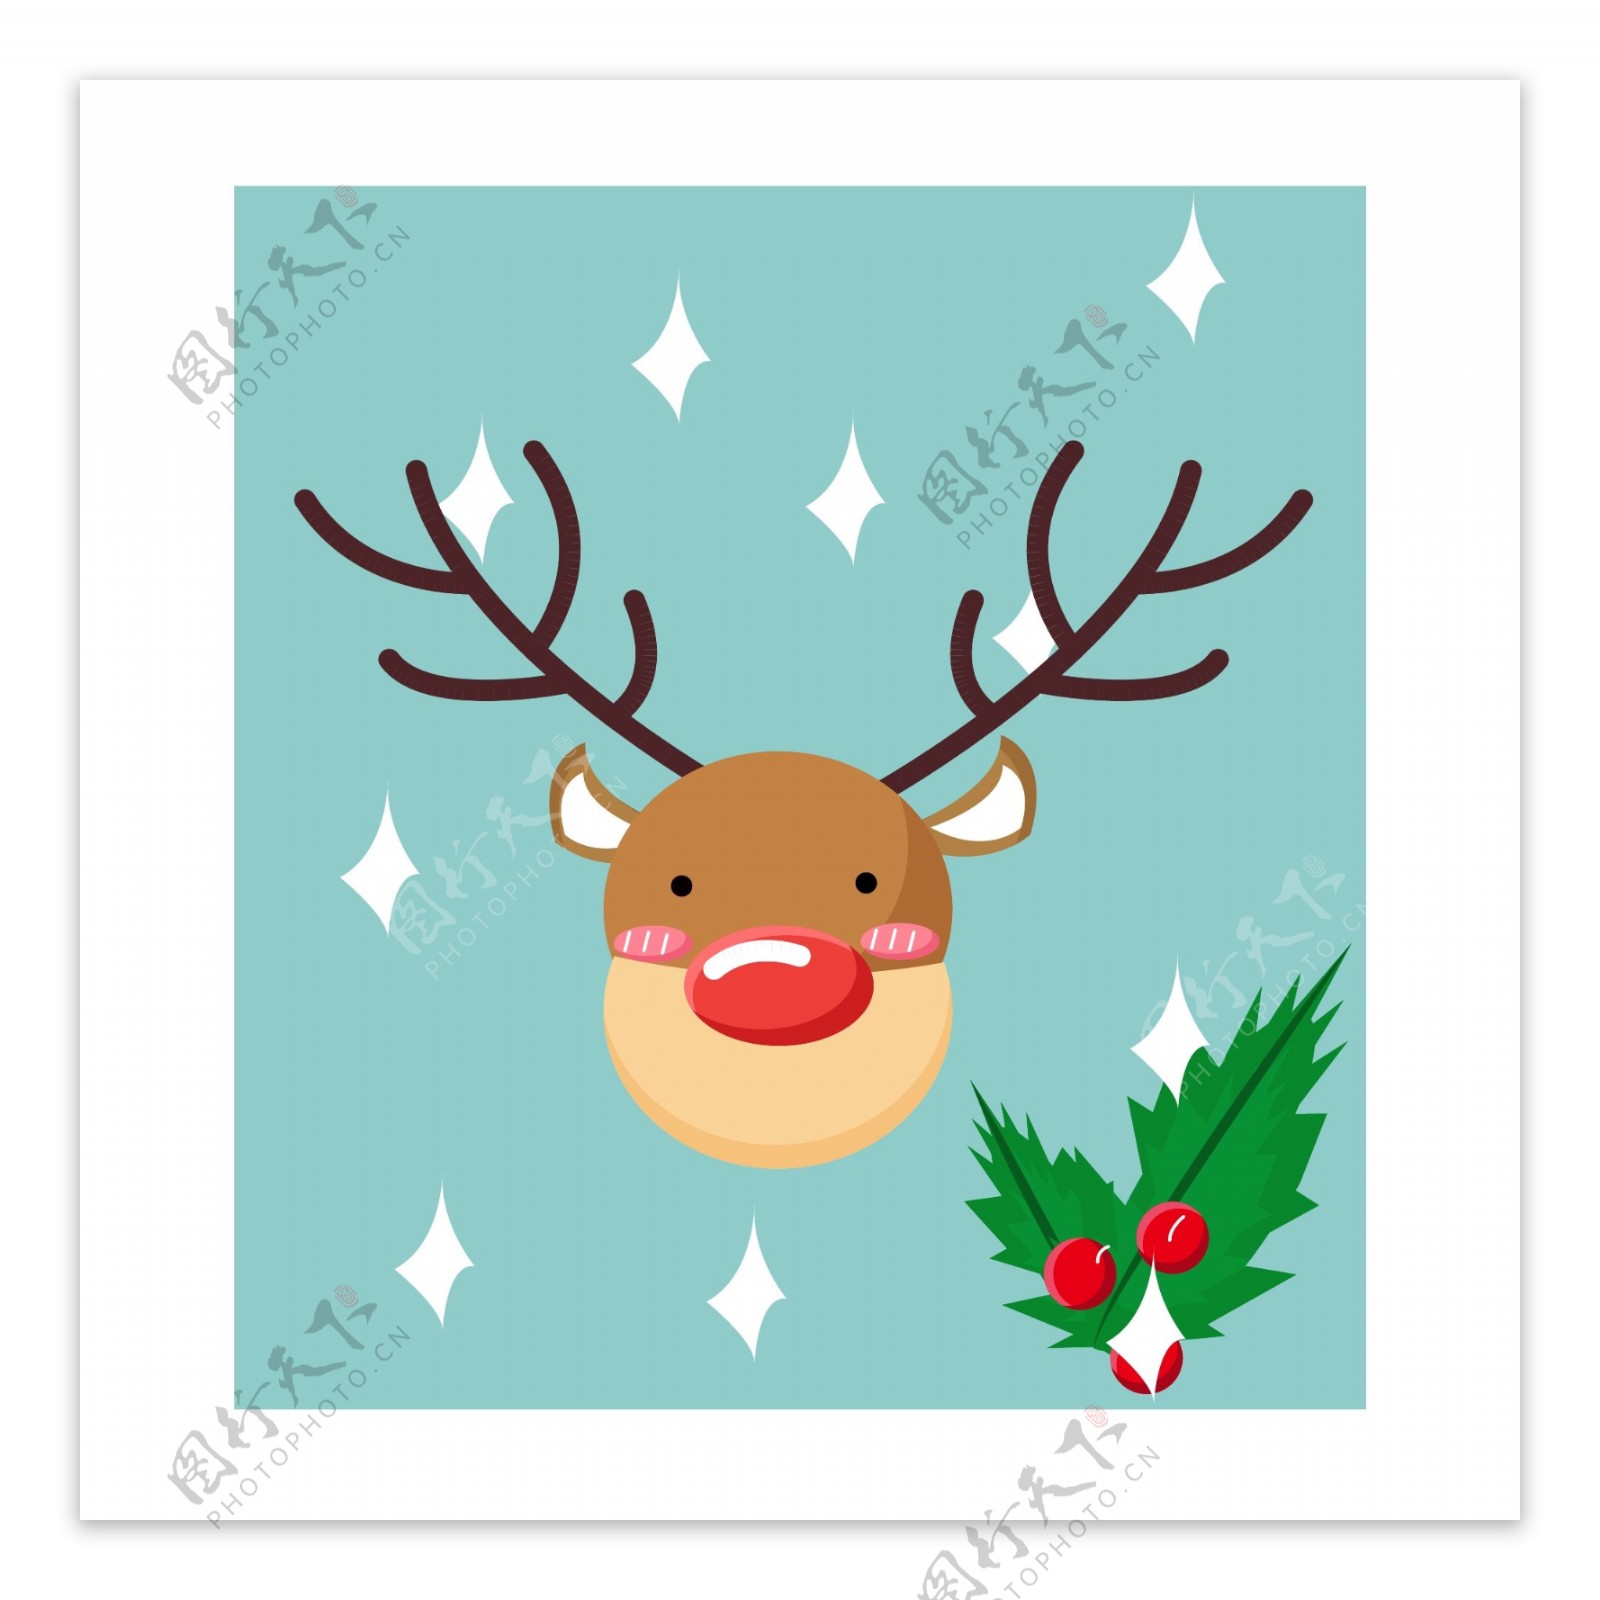 可爱圣诞节矢量麋鹿邮票小贴纸